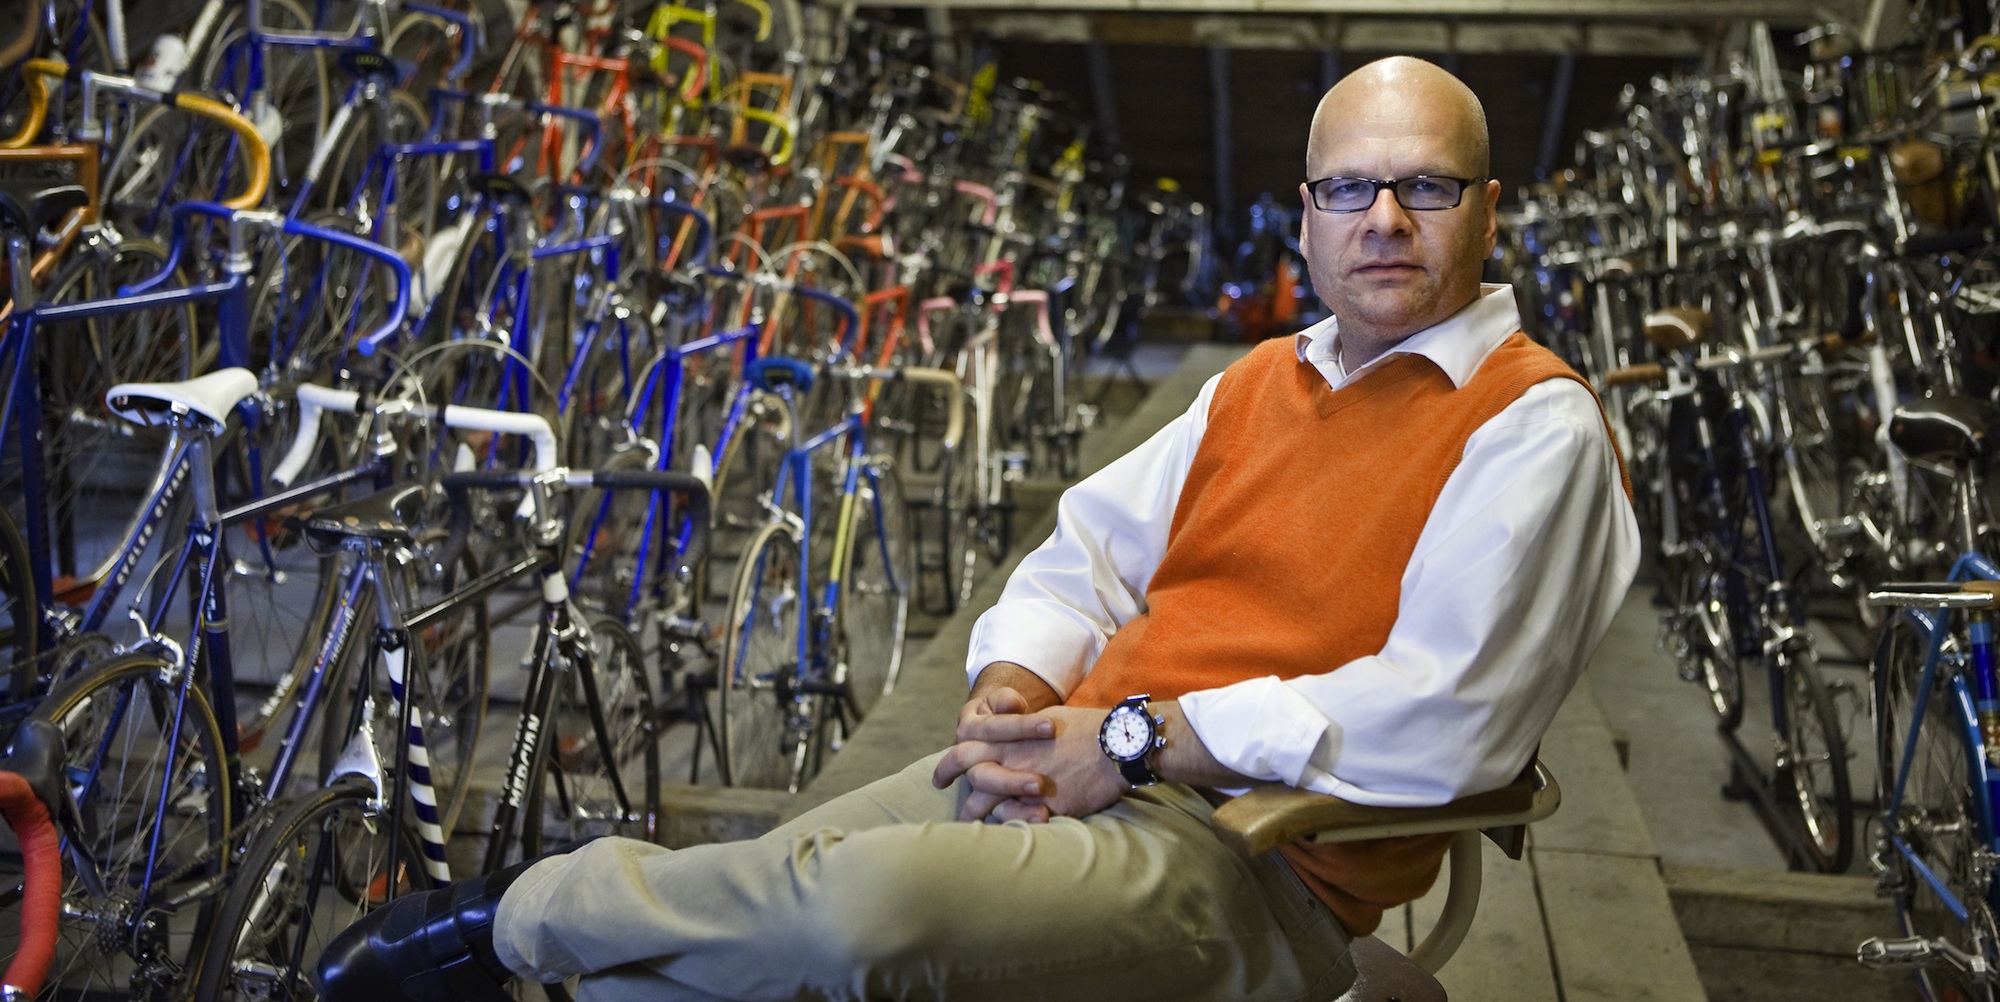 Michael Embacher mit seiner Fahrradsammlung im Hintergrund